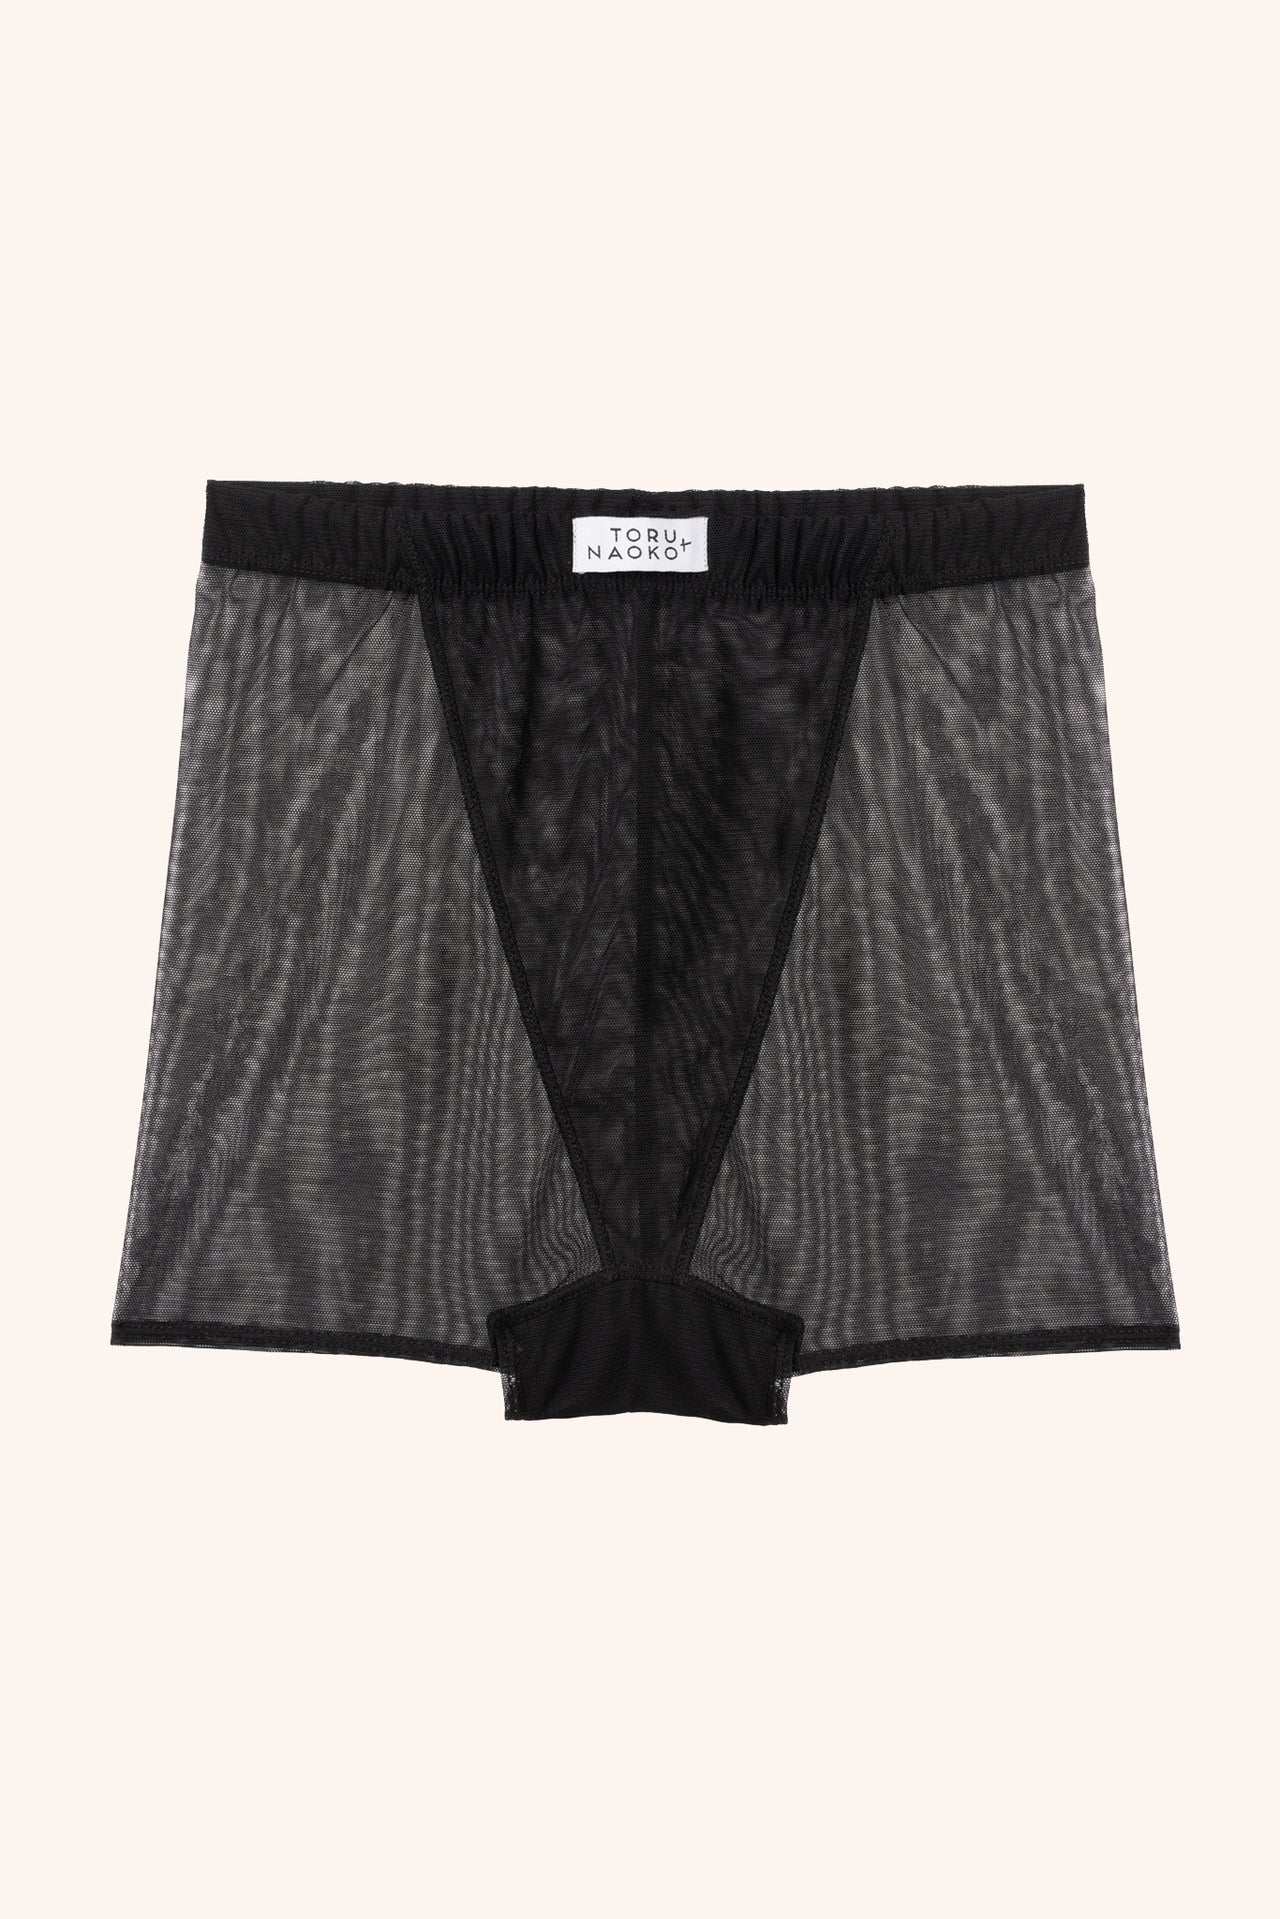 Nico boxer shorts - mesh – Toru & Naoko